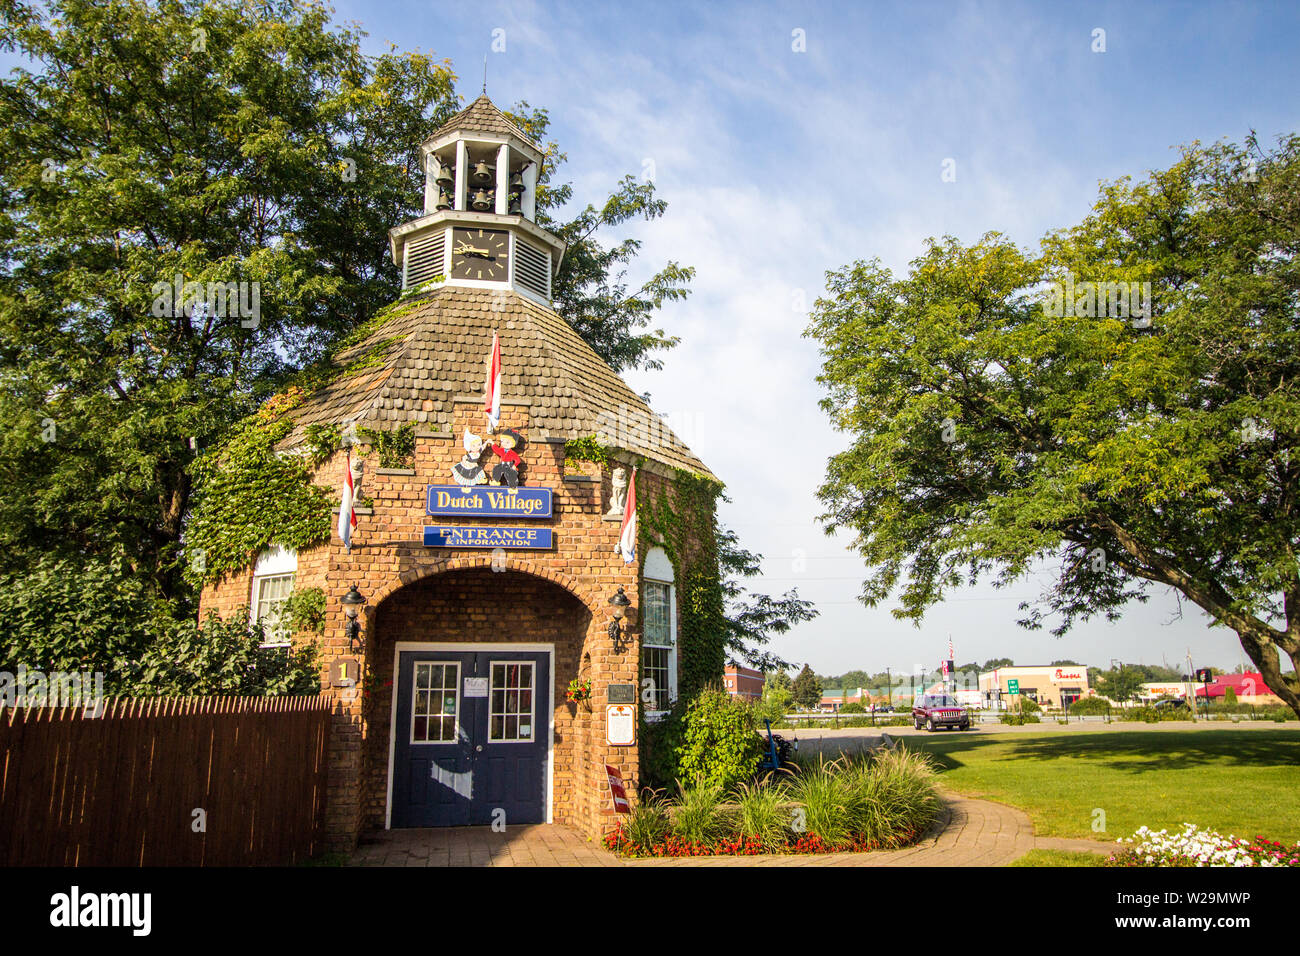 Holland, Michigan, EE.UU. - 18 de septiembre de 2018: Vista de calle de estilo holandés cottage y tiendas en Nelis Dutch Village. Foto de stock